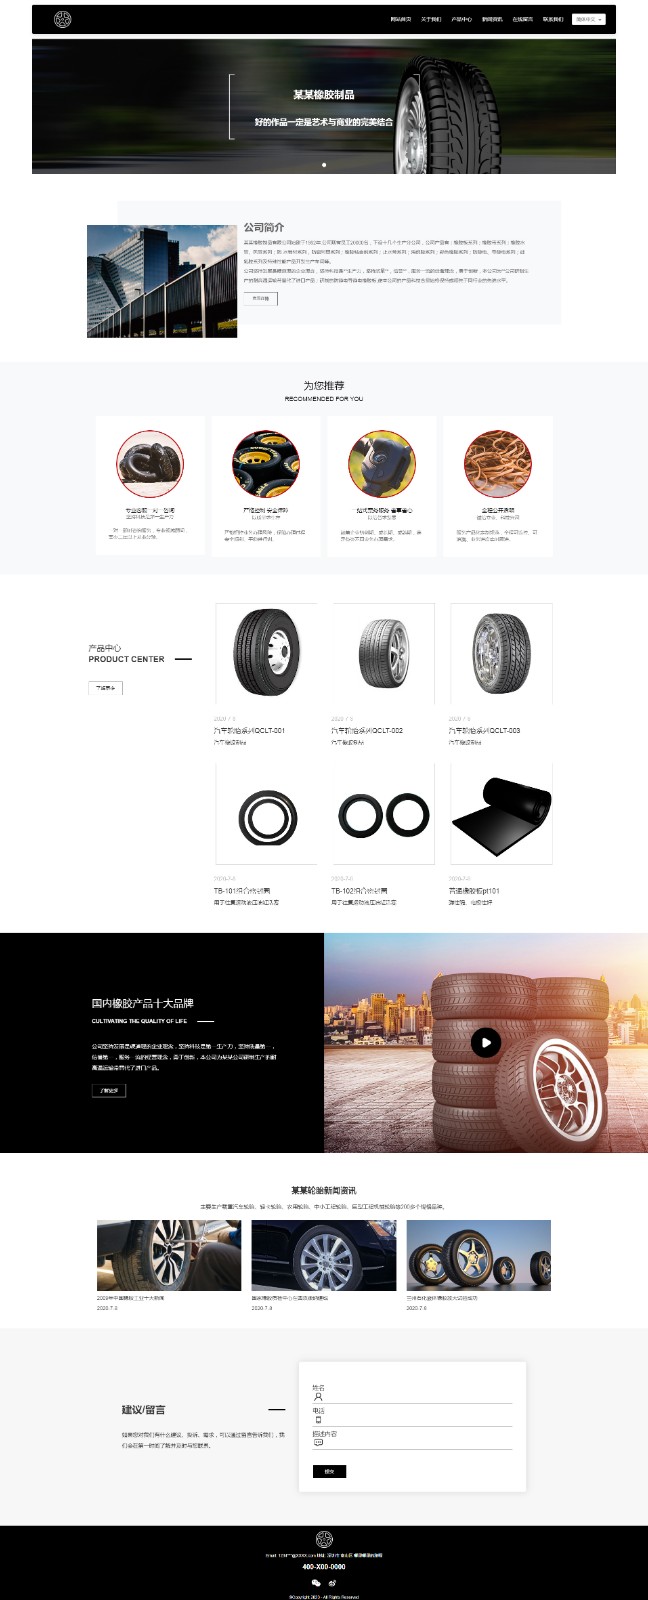 橡胶、塑料制品网站模板-rubber-001